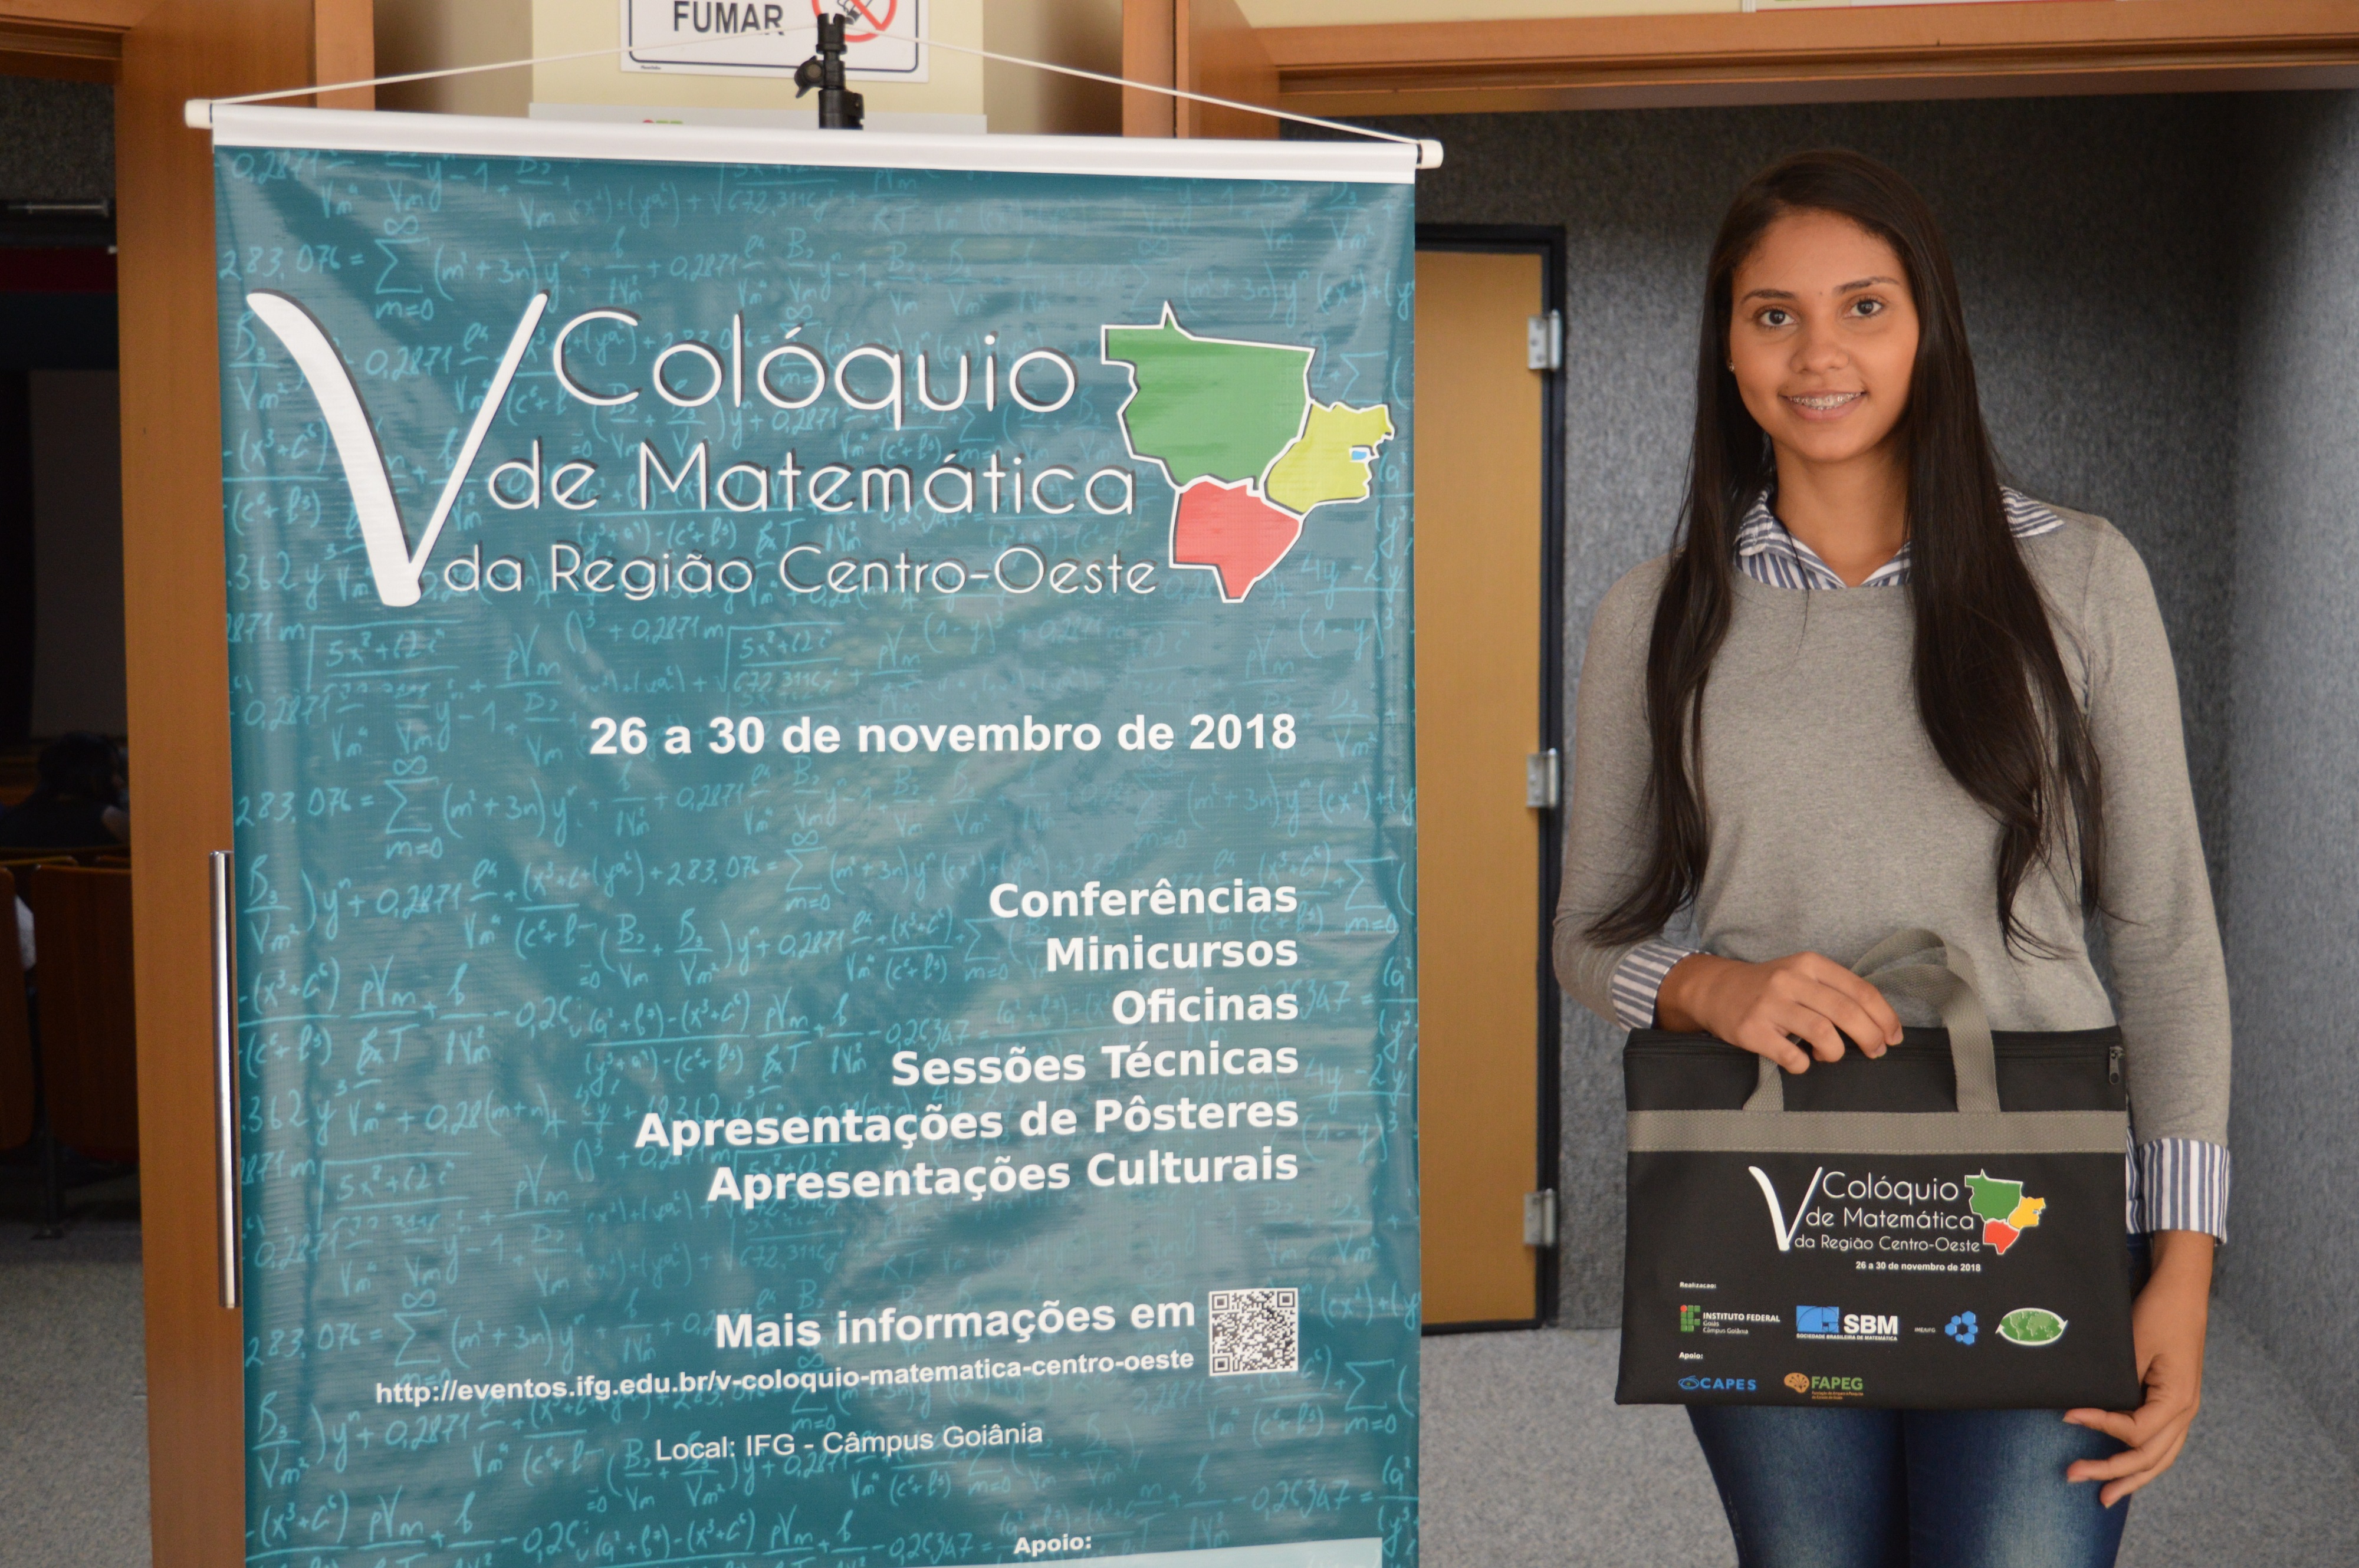 Aluna de Licenciatura em Matemática do IFG - Câmpus Goiânia, Soraya dos Anjos Félix, diz que o Colóquio é uma ótima oportunidade para conhecer conteúdos novos na área de Matemática.